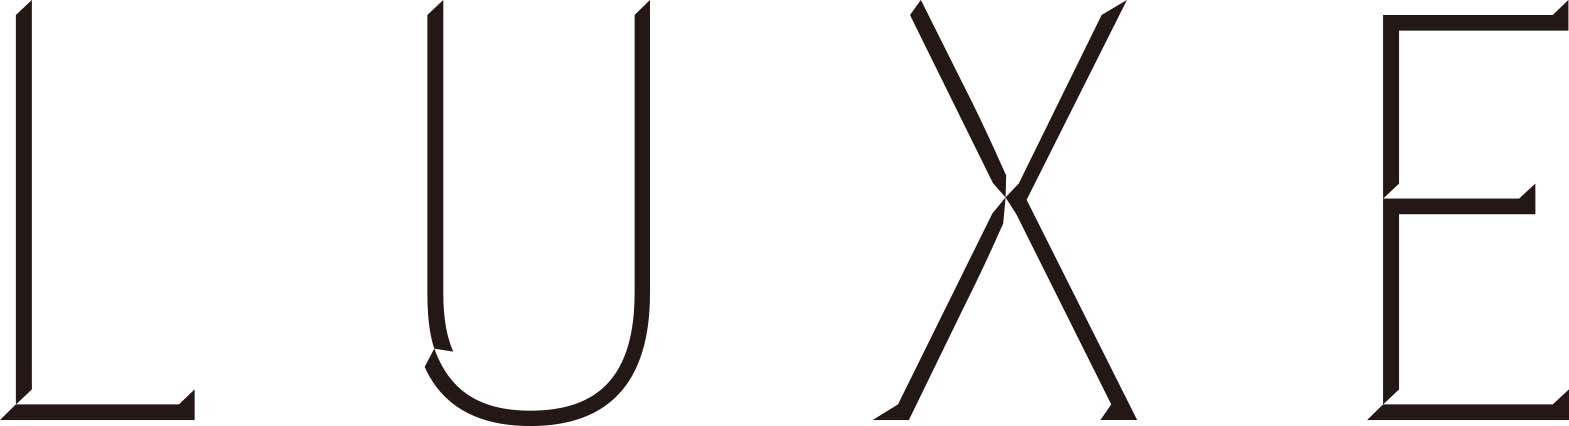 髙橋大輔が主演のアイスショー『LUXE（リュクス）』のトークショーが実施される